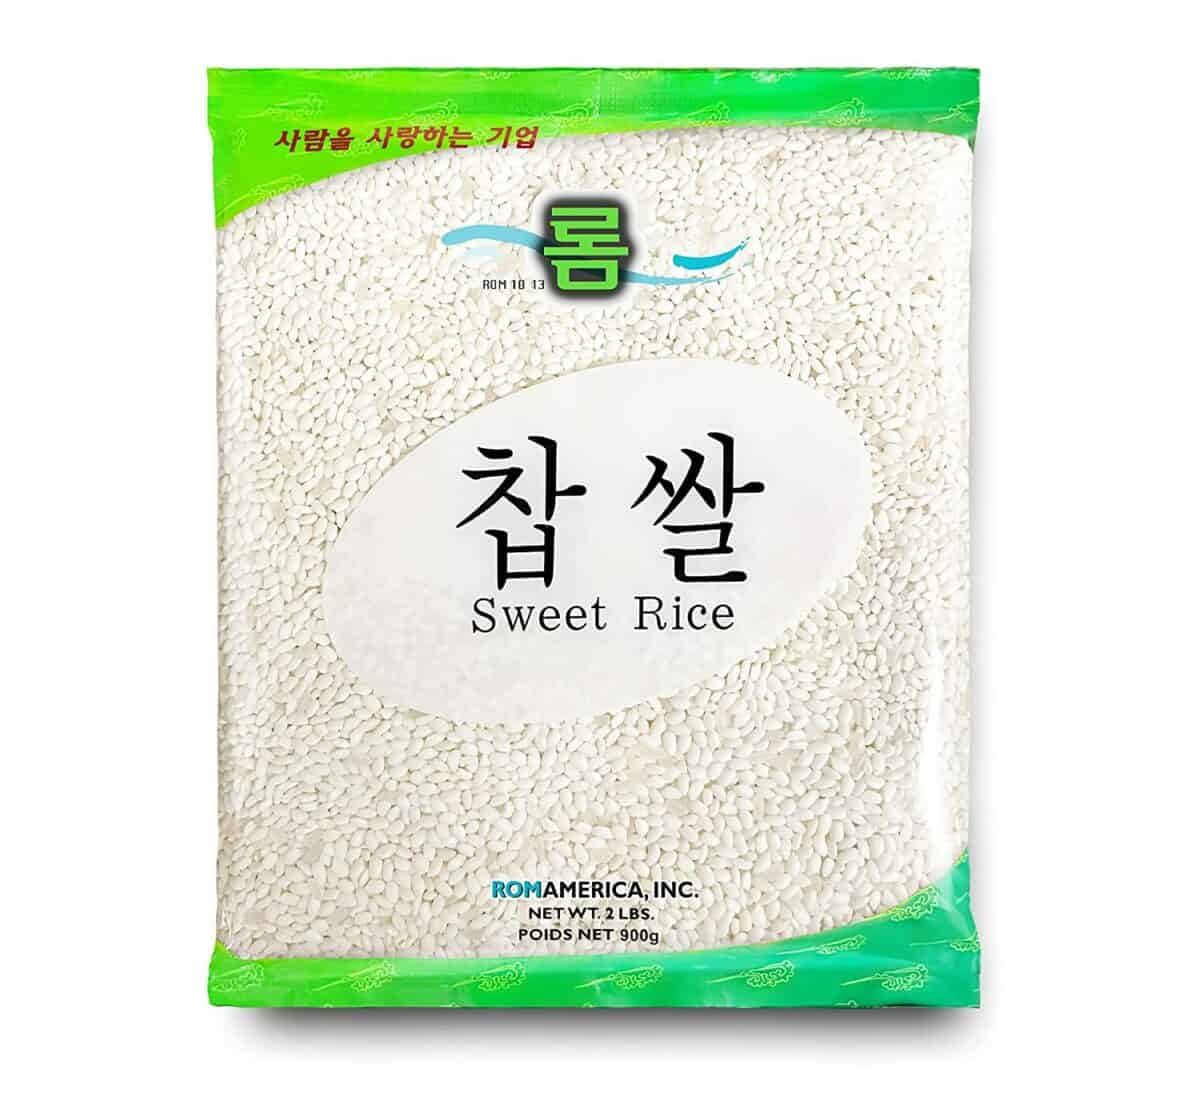 ROM AMERICA Sweet Sticky Glutinous kortkornigt vitt ris för asiatisk matlagning och desserter - Thai Mango Sticky Rice, godis, pudding, koreansk Tteok-riskårta